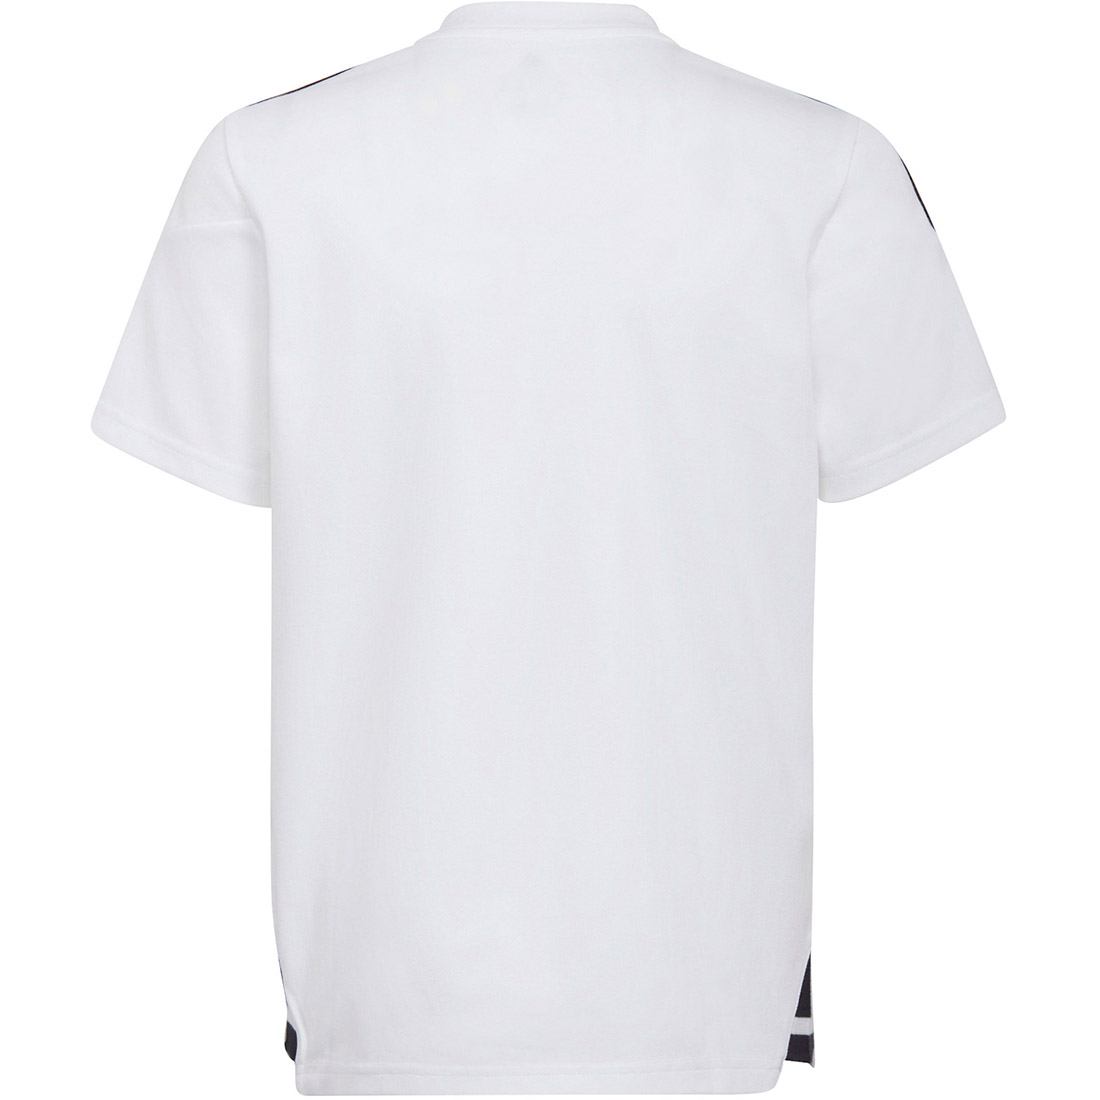 Adidas Kinder Poloshirt Condivo 22 weiß-schwarz